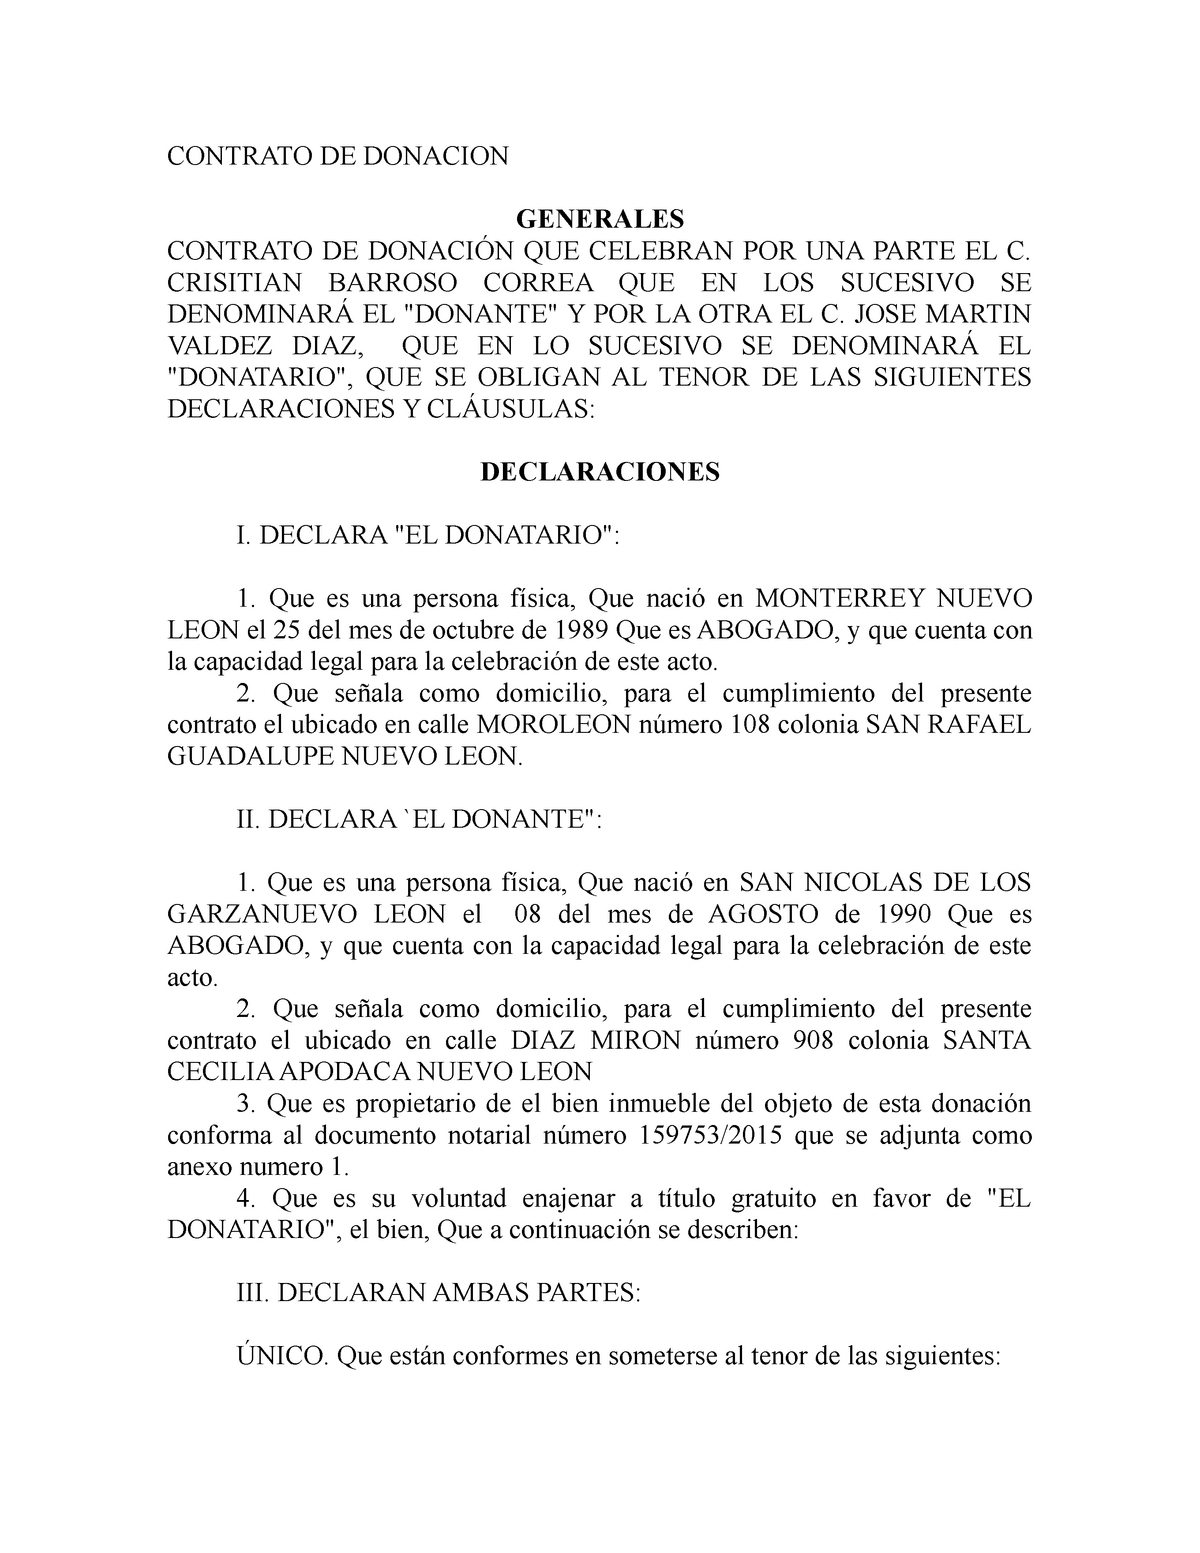 Act4 Contrato De Donacion Cbc Contrato De Donacion Generales Contrato De DonaciÓn Que Celebran 1161